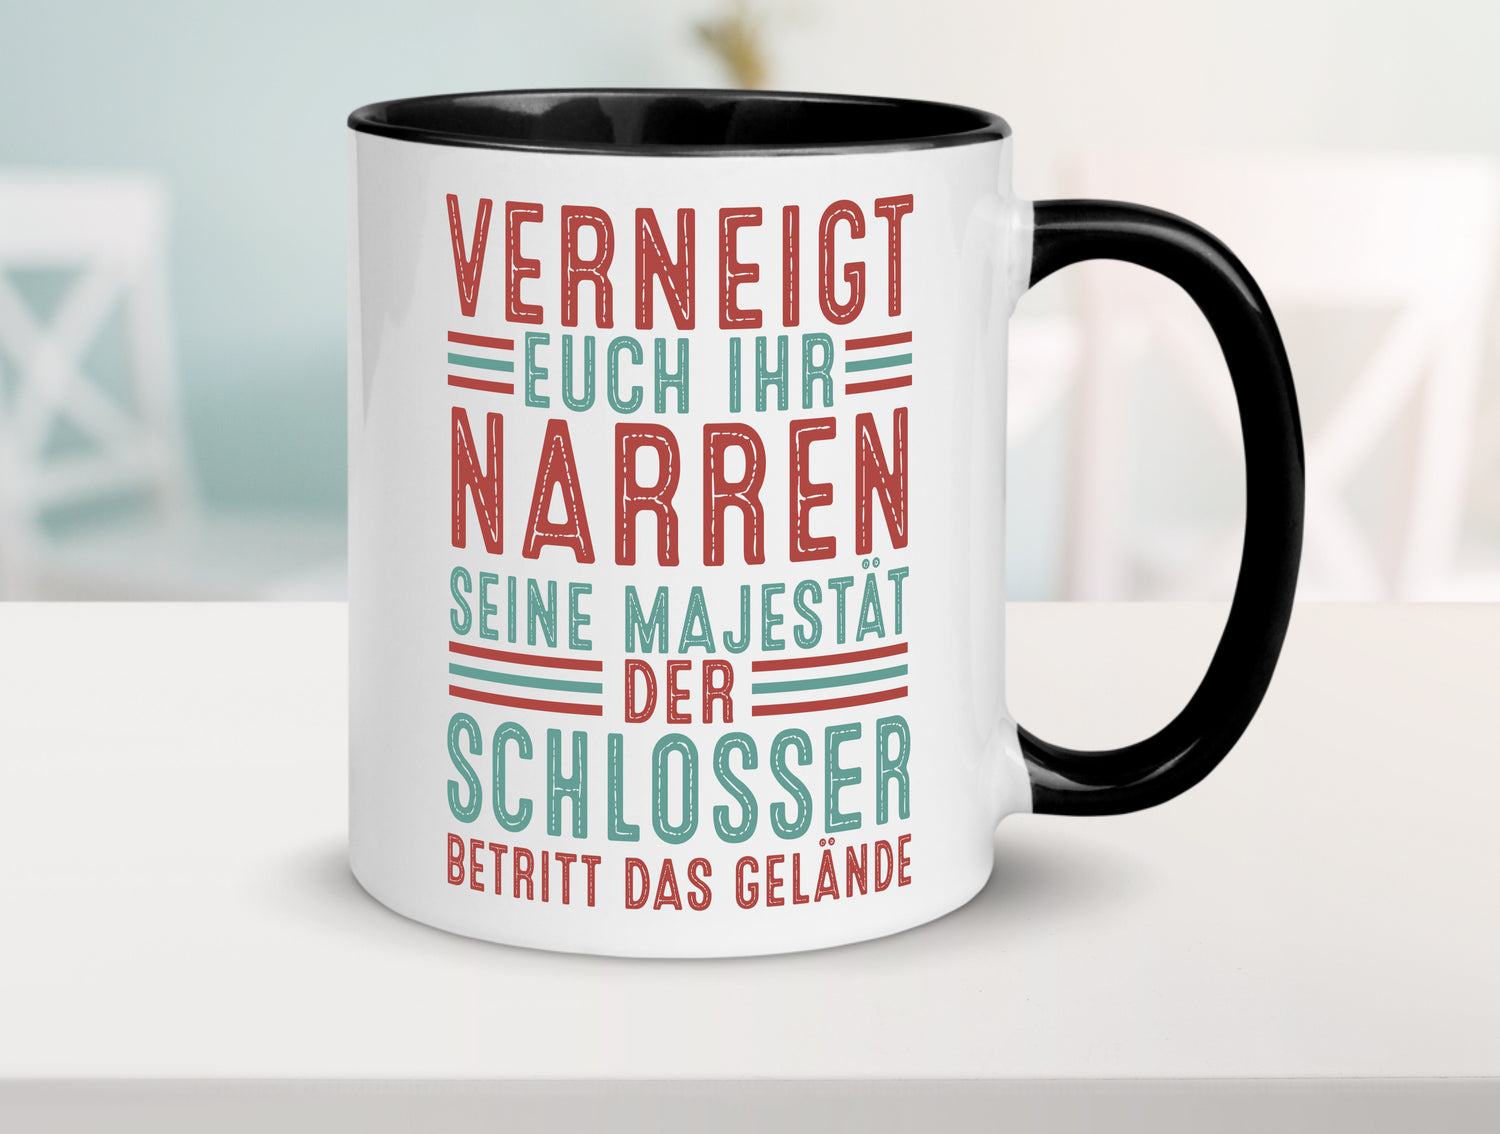 Verneigt euch: Schlosser | Beruf Schlosserei Tasse Weiß - Schwarz - Kaffeetasse / Geschenk / Familie